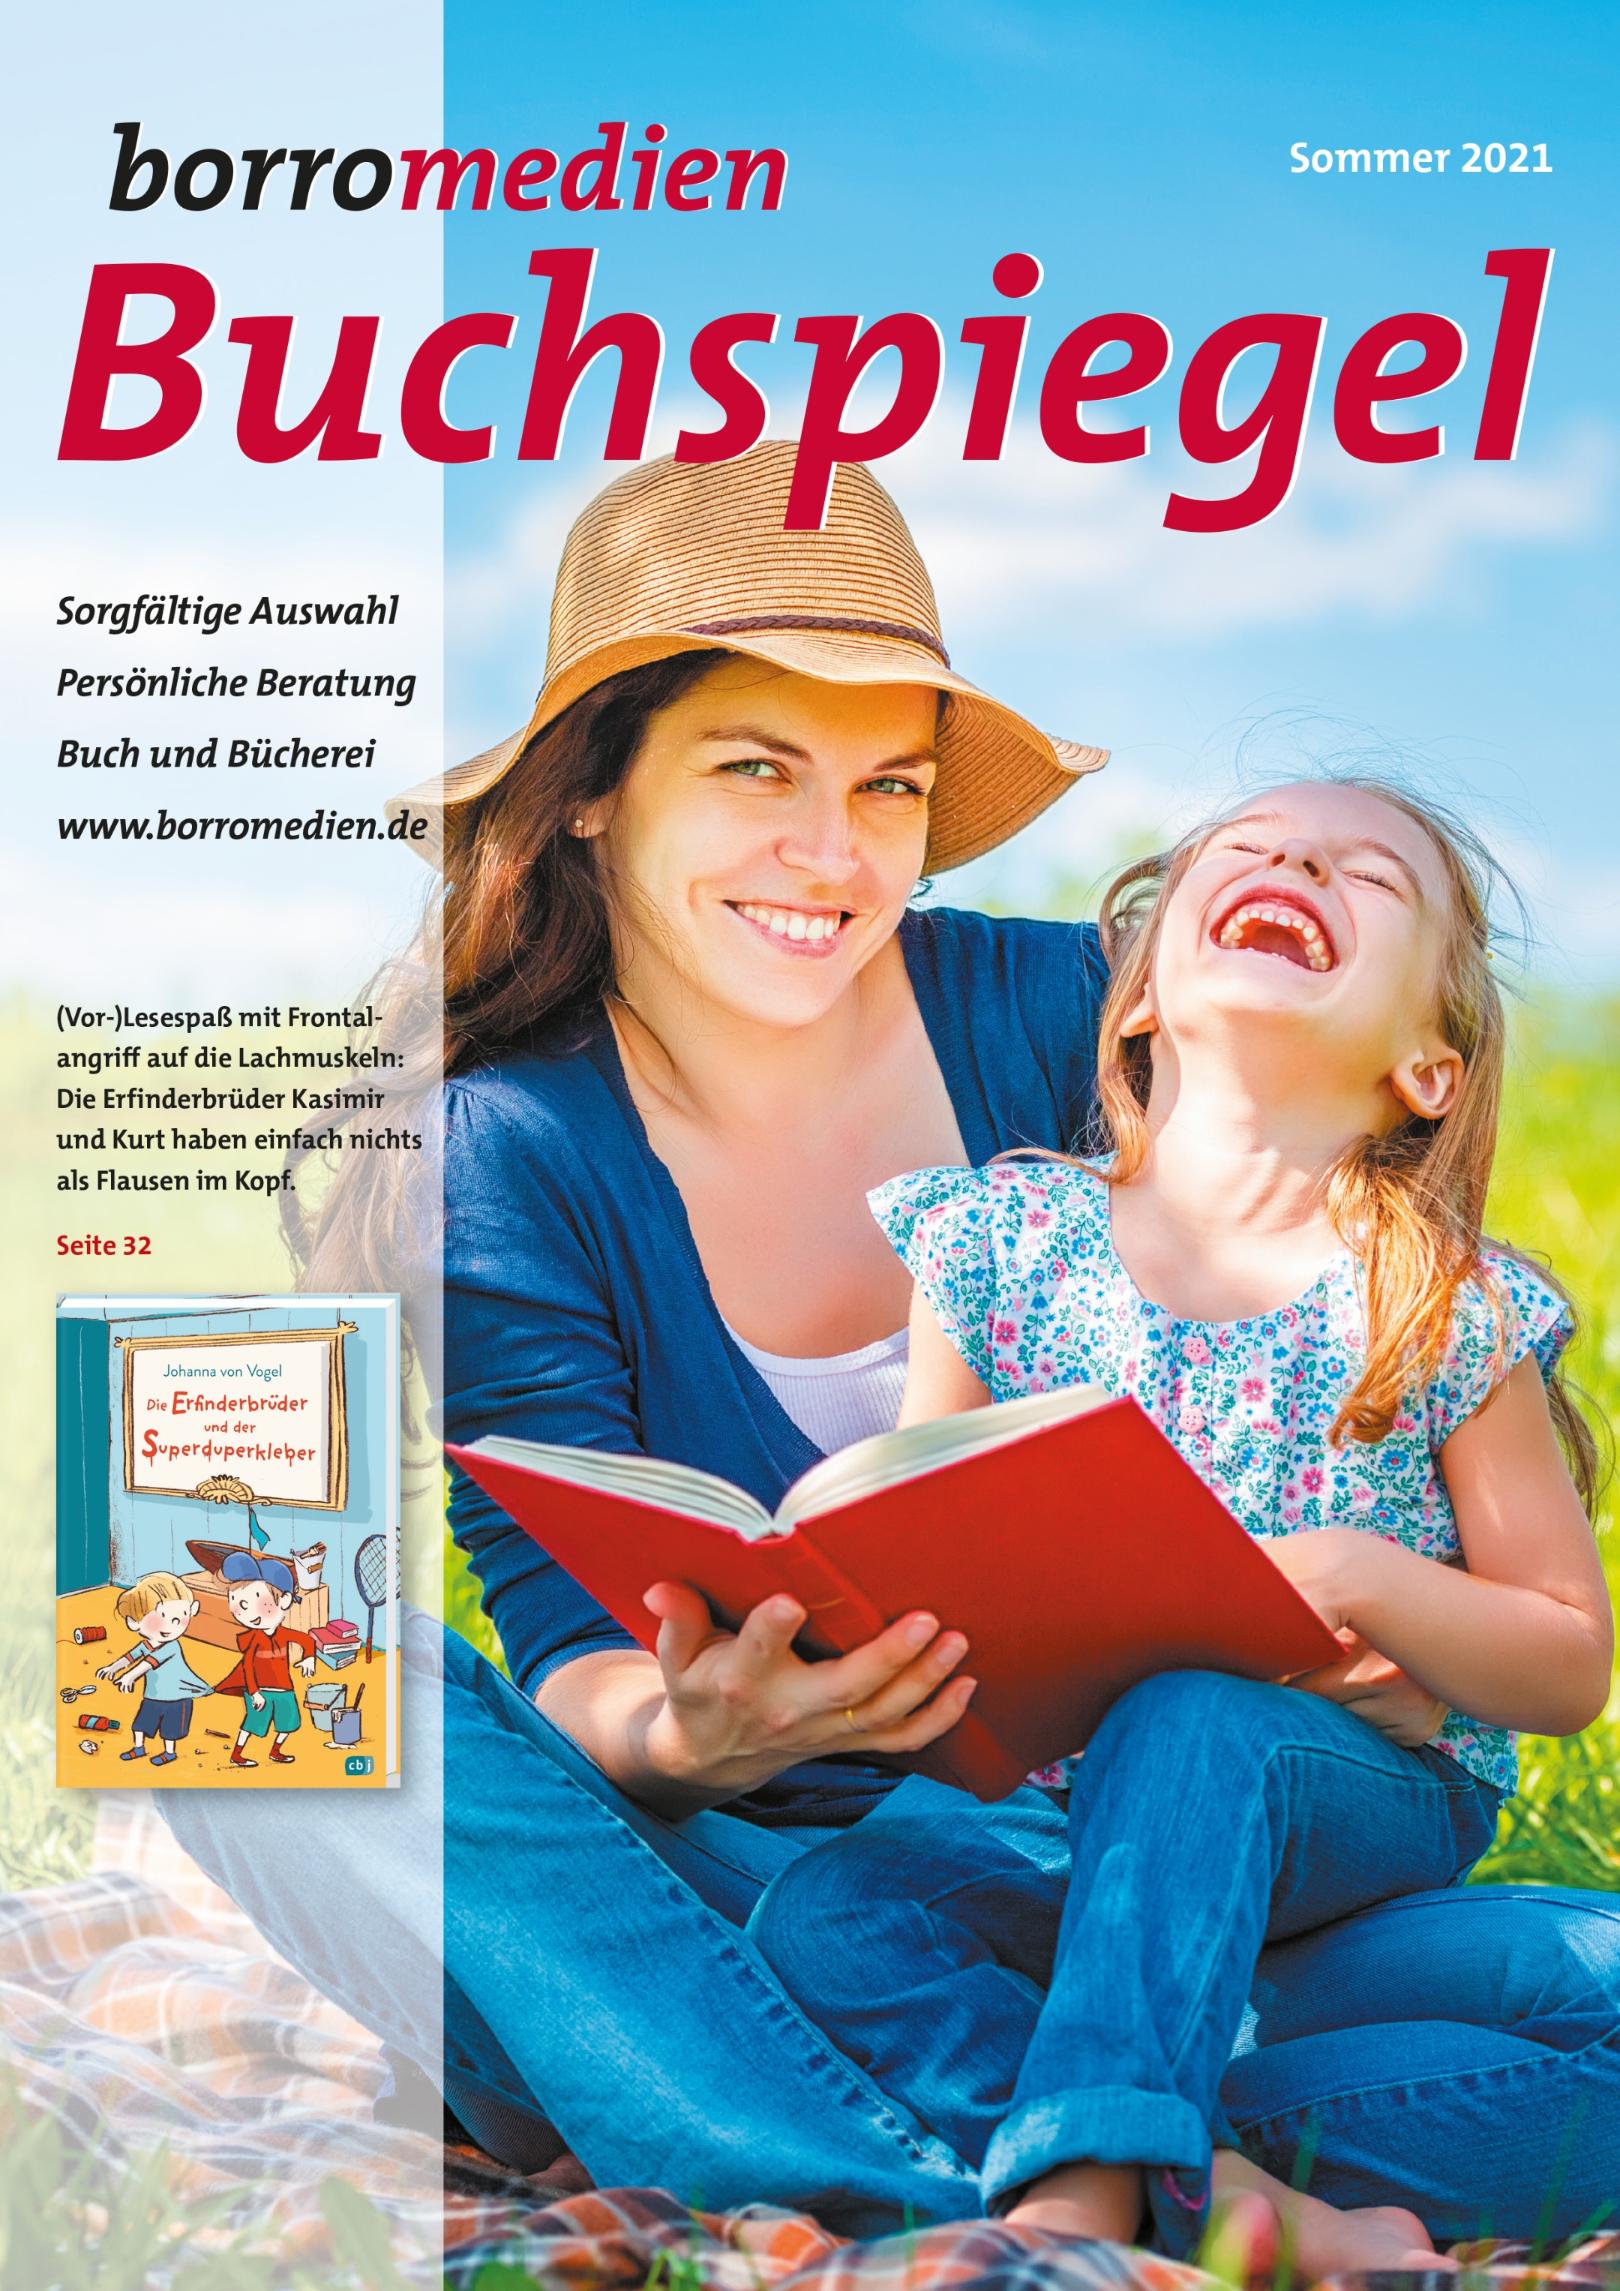 Buchspiegel Sommer (c) borromedien